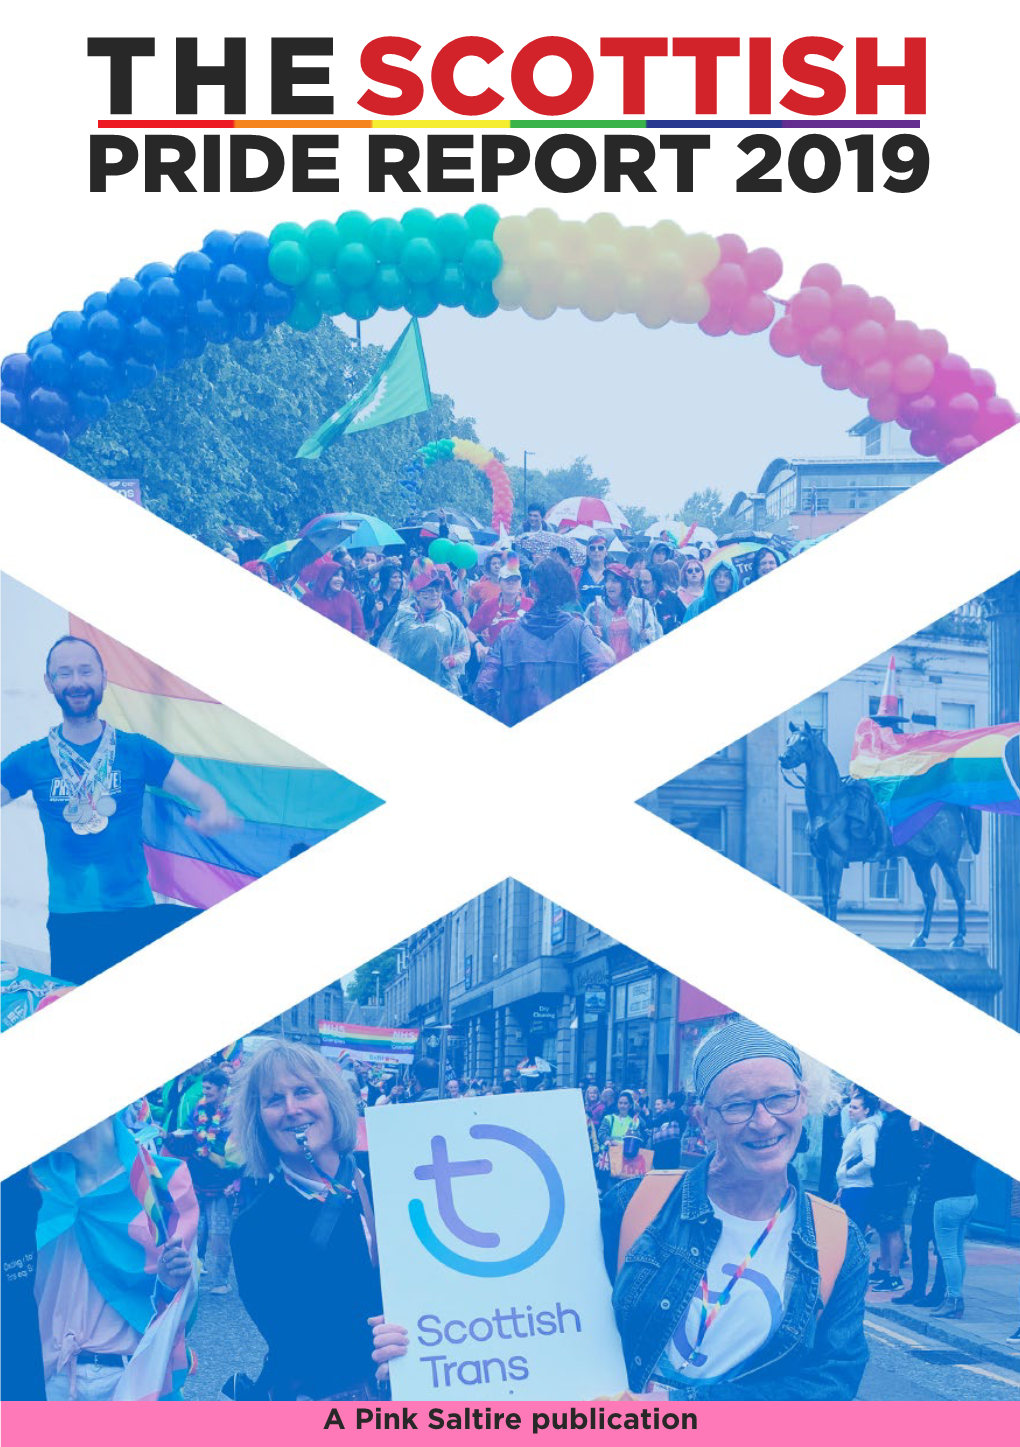 The Scottish Pride Report 2019